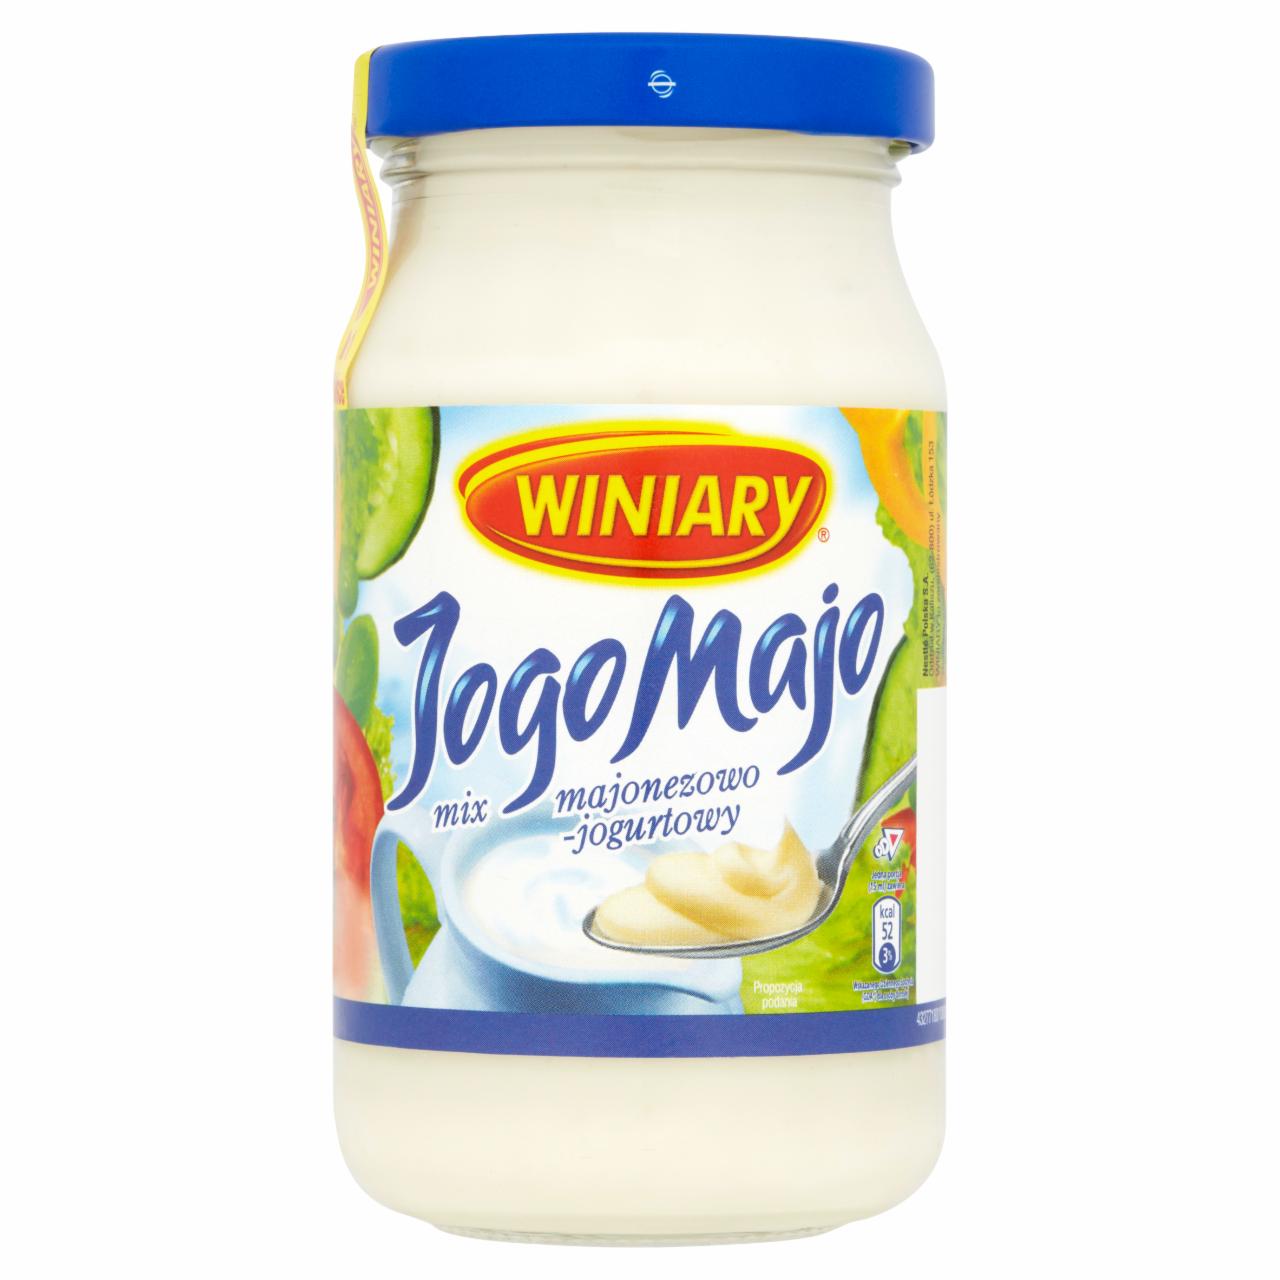 Zdjęcia - Winiary JogoMajo Mix majonezowo-jogurtowy 250 ml